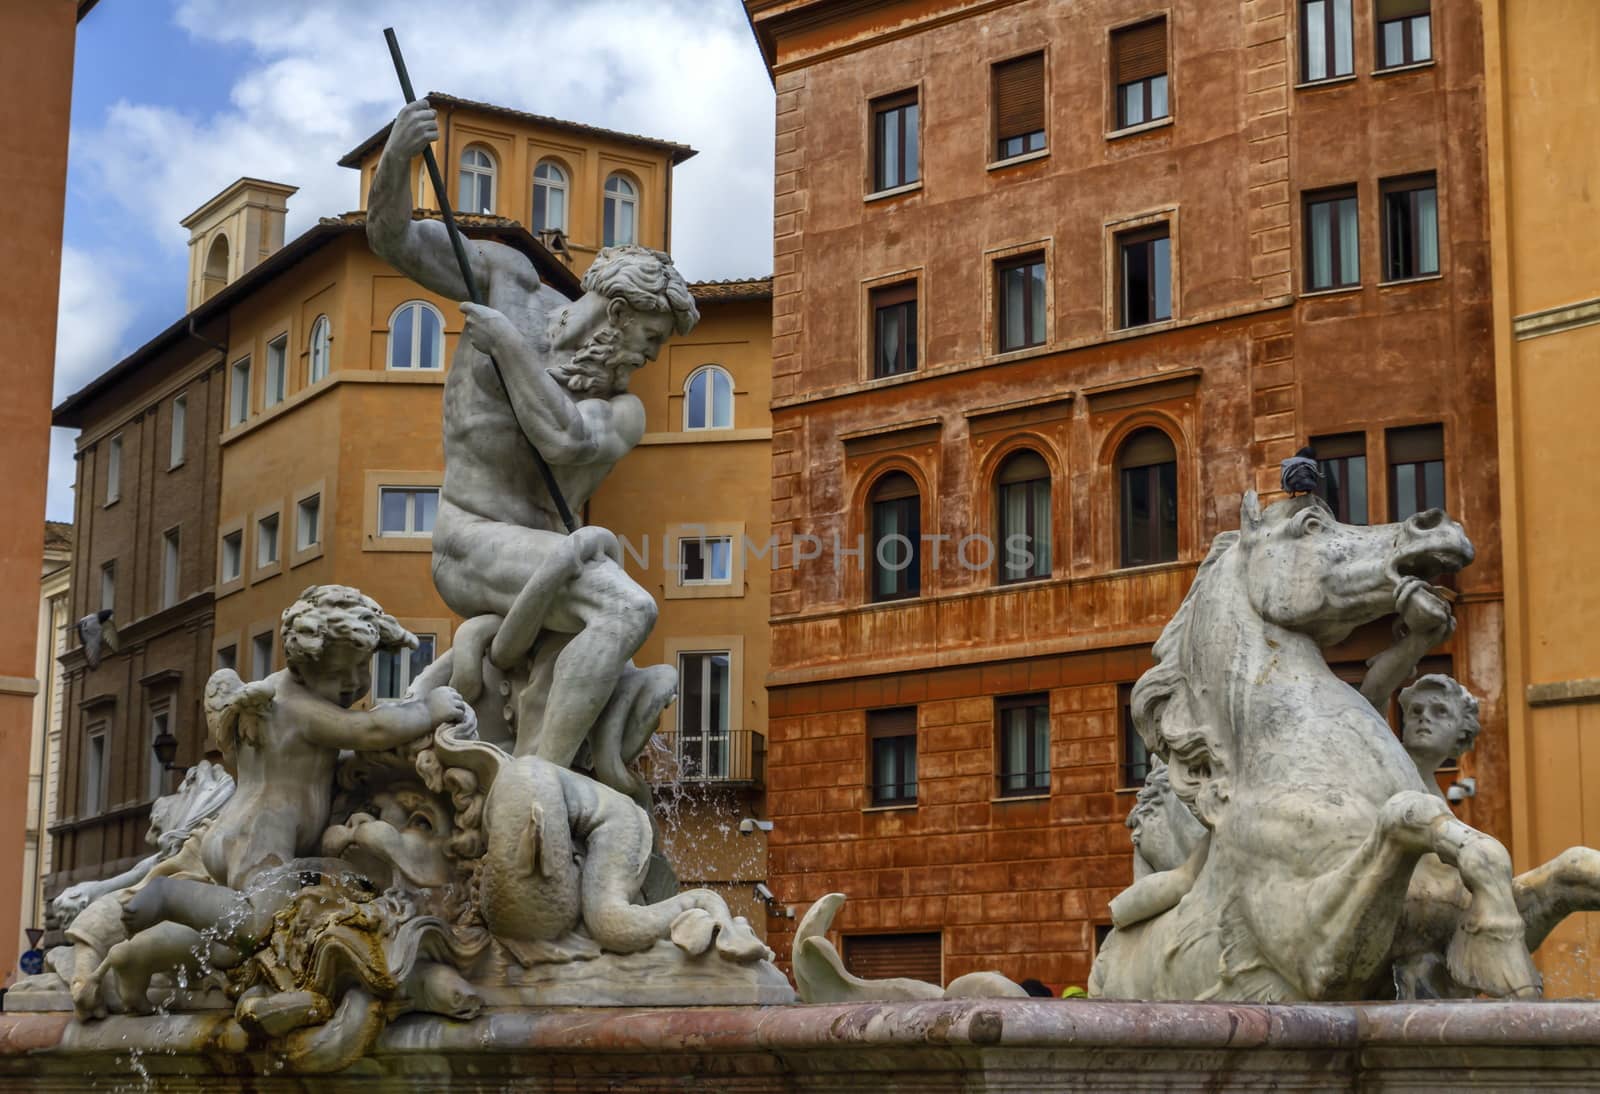 Fontana del Nettuno, fountain of Neptune, Piazza Navona, Roma, Italy by Elenaphotos21